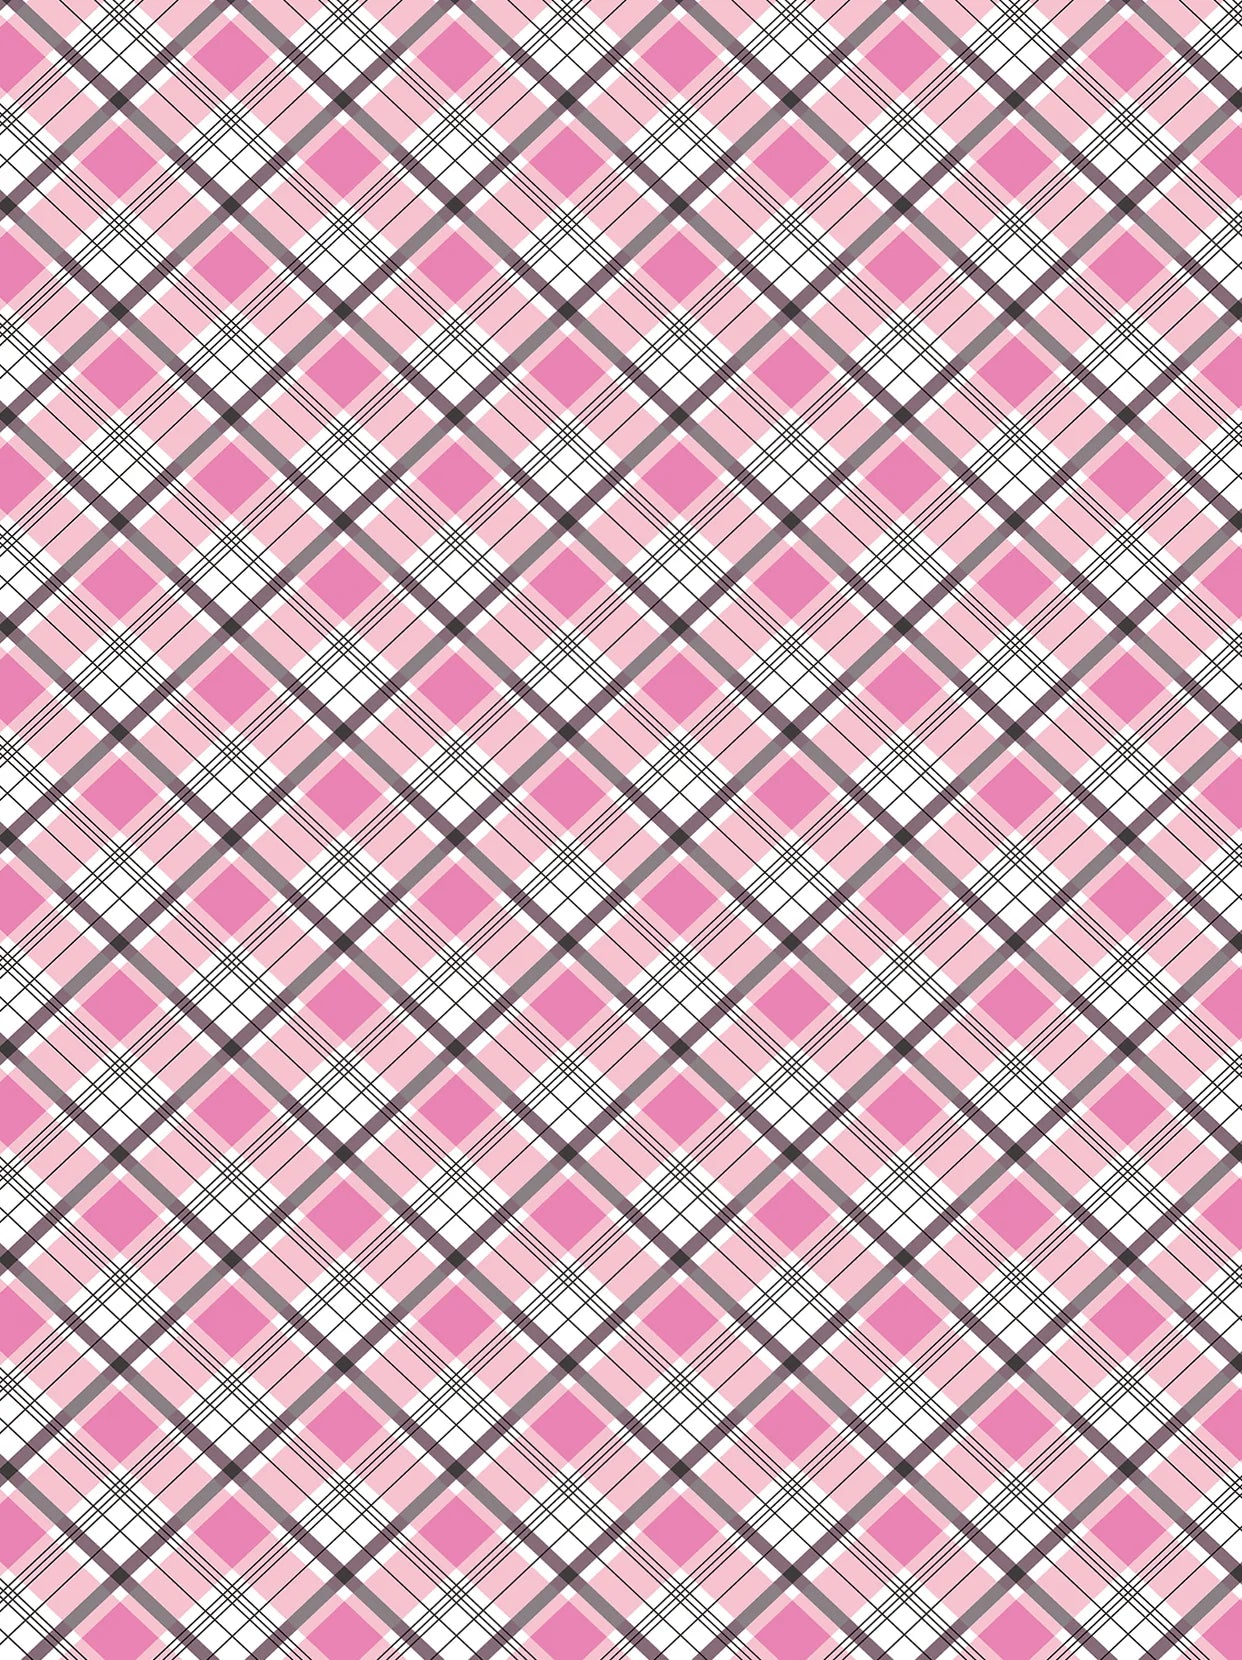 Pink Checkboard Short-sleeve Golf Shirt for Women